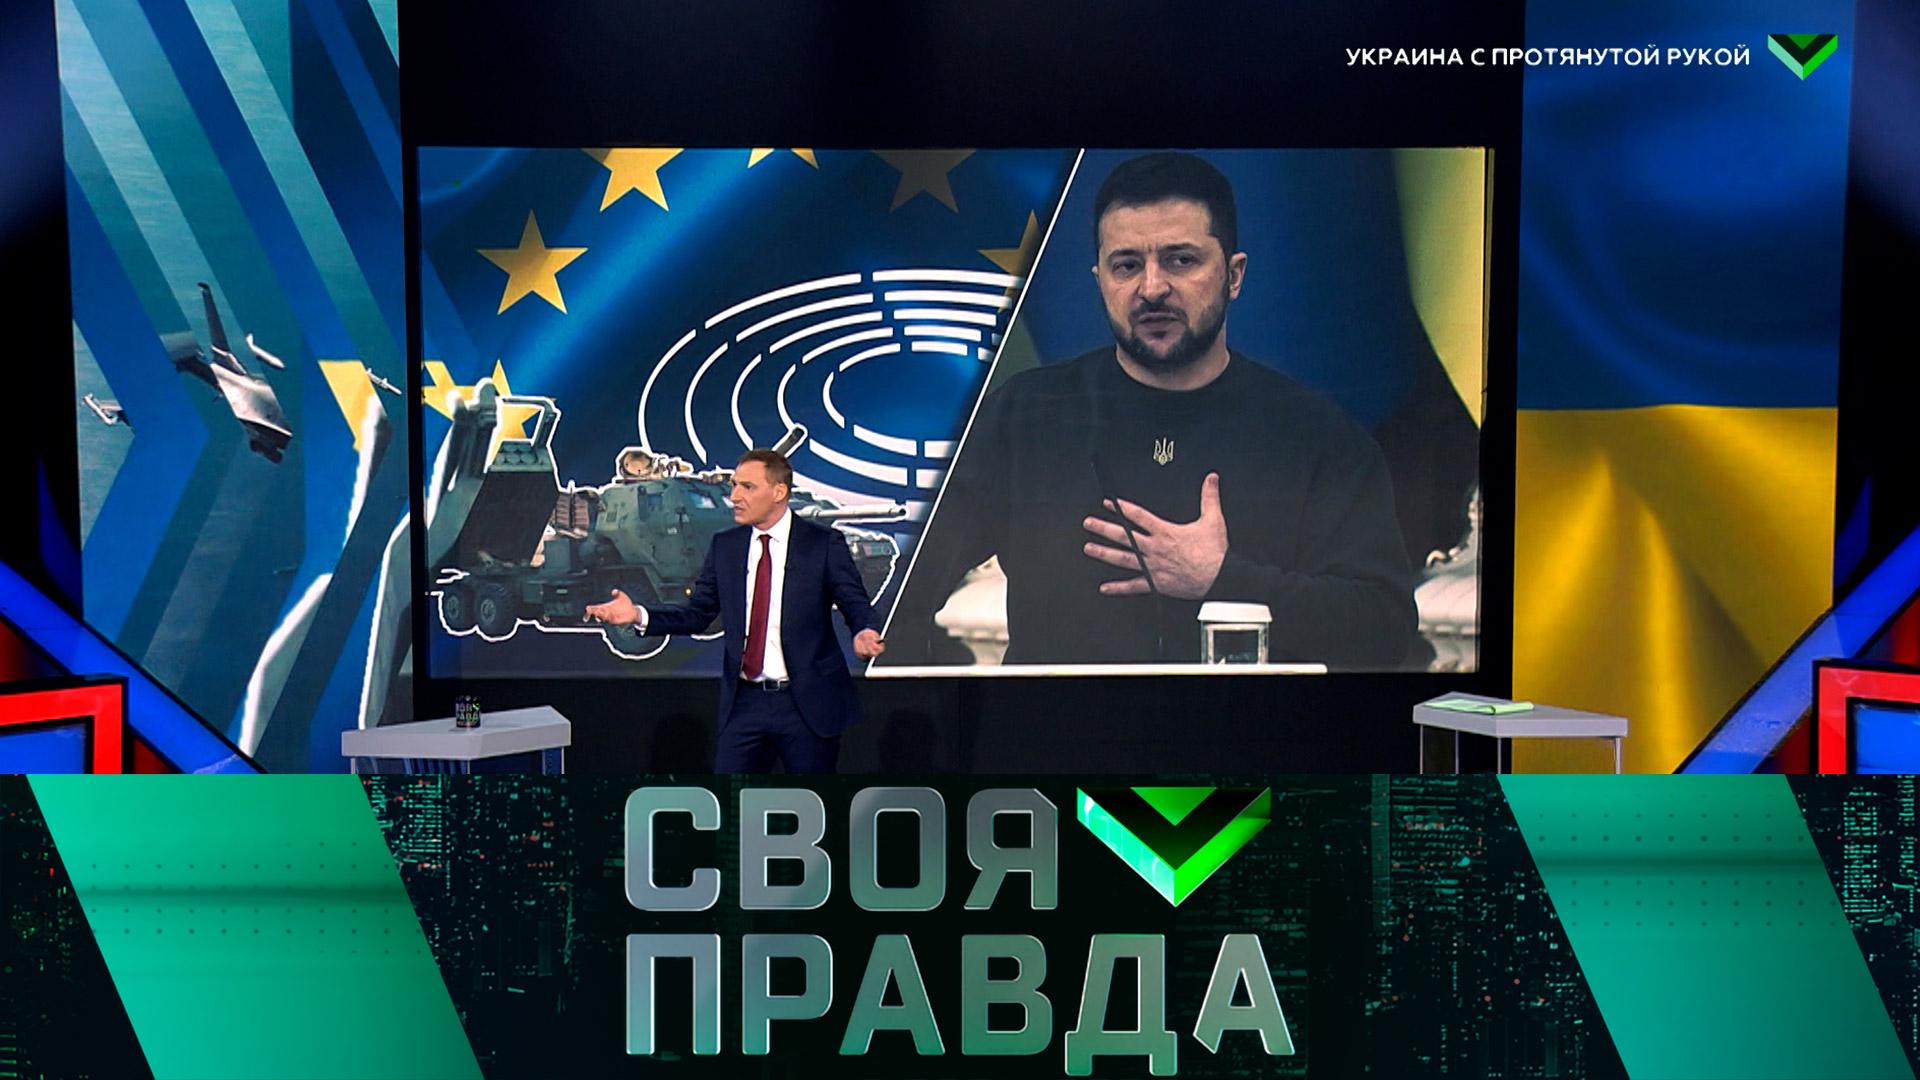 Своя правда: Украина спротянутой рукой | Выпуск от 10 февраля 2023 года